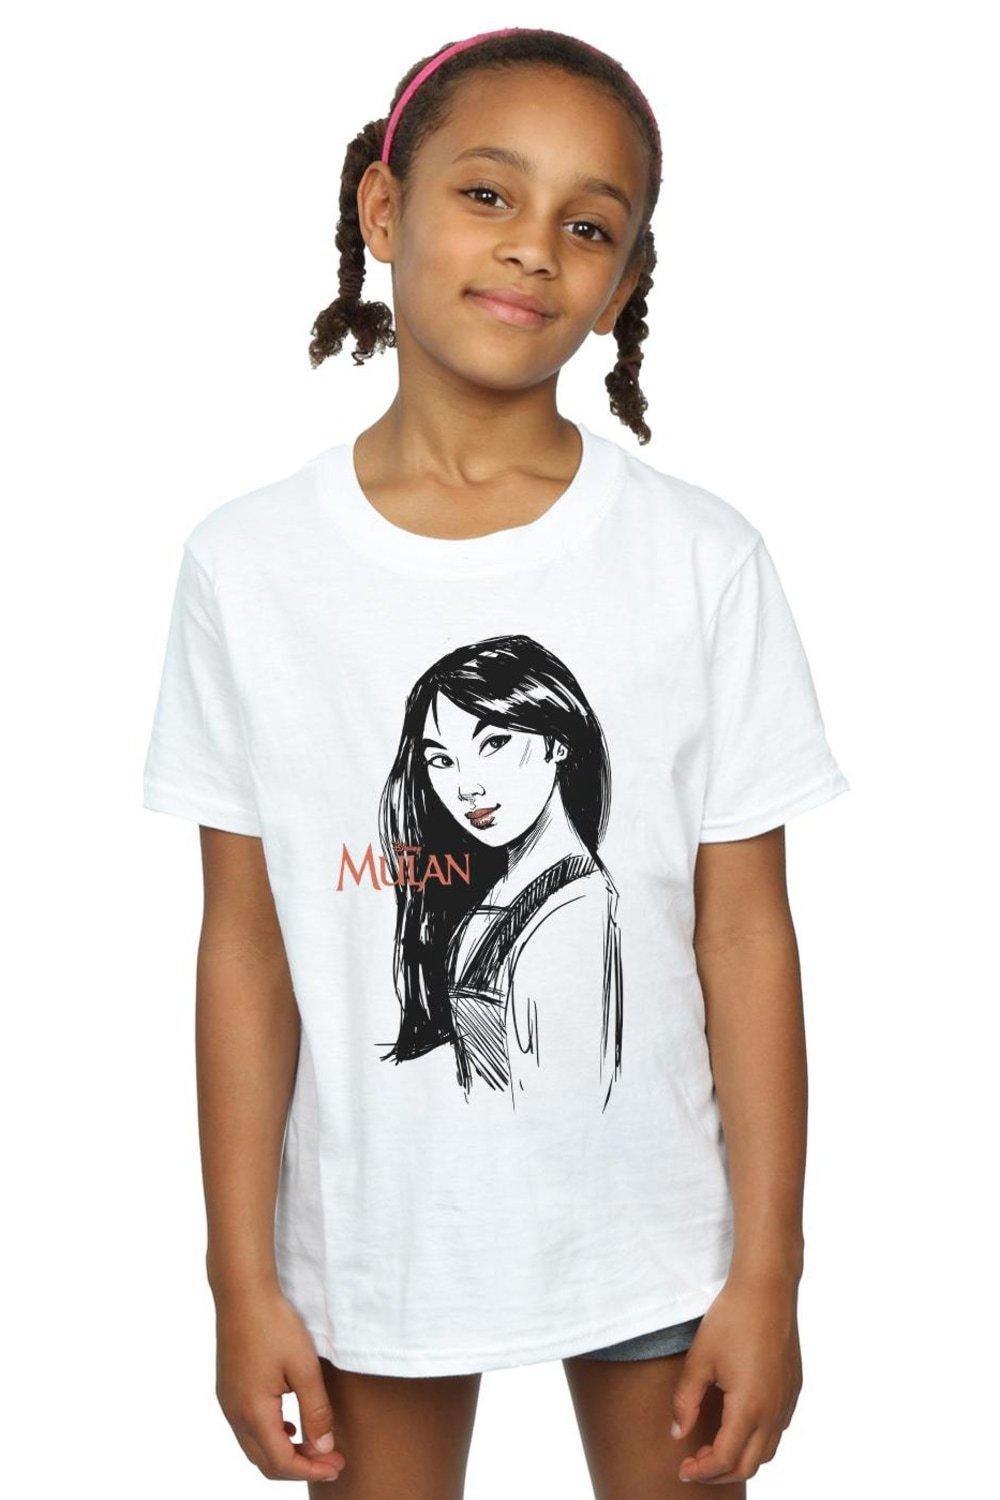 Хлопковая футболка Мулан с эскизом Disney, белый